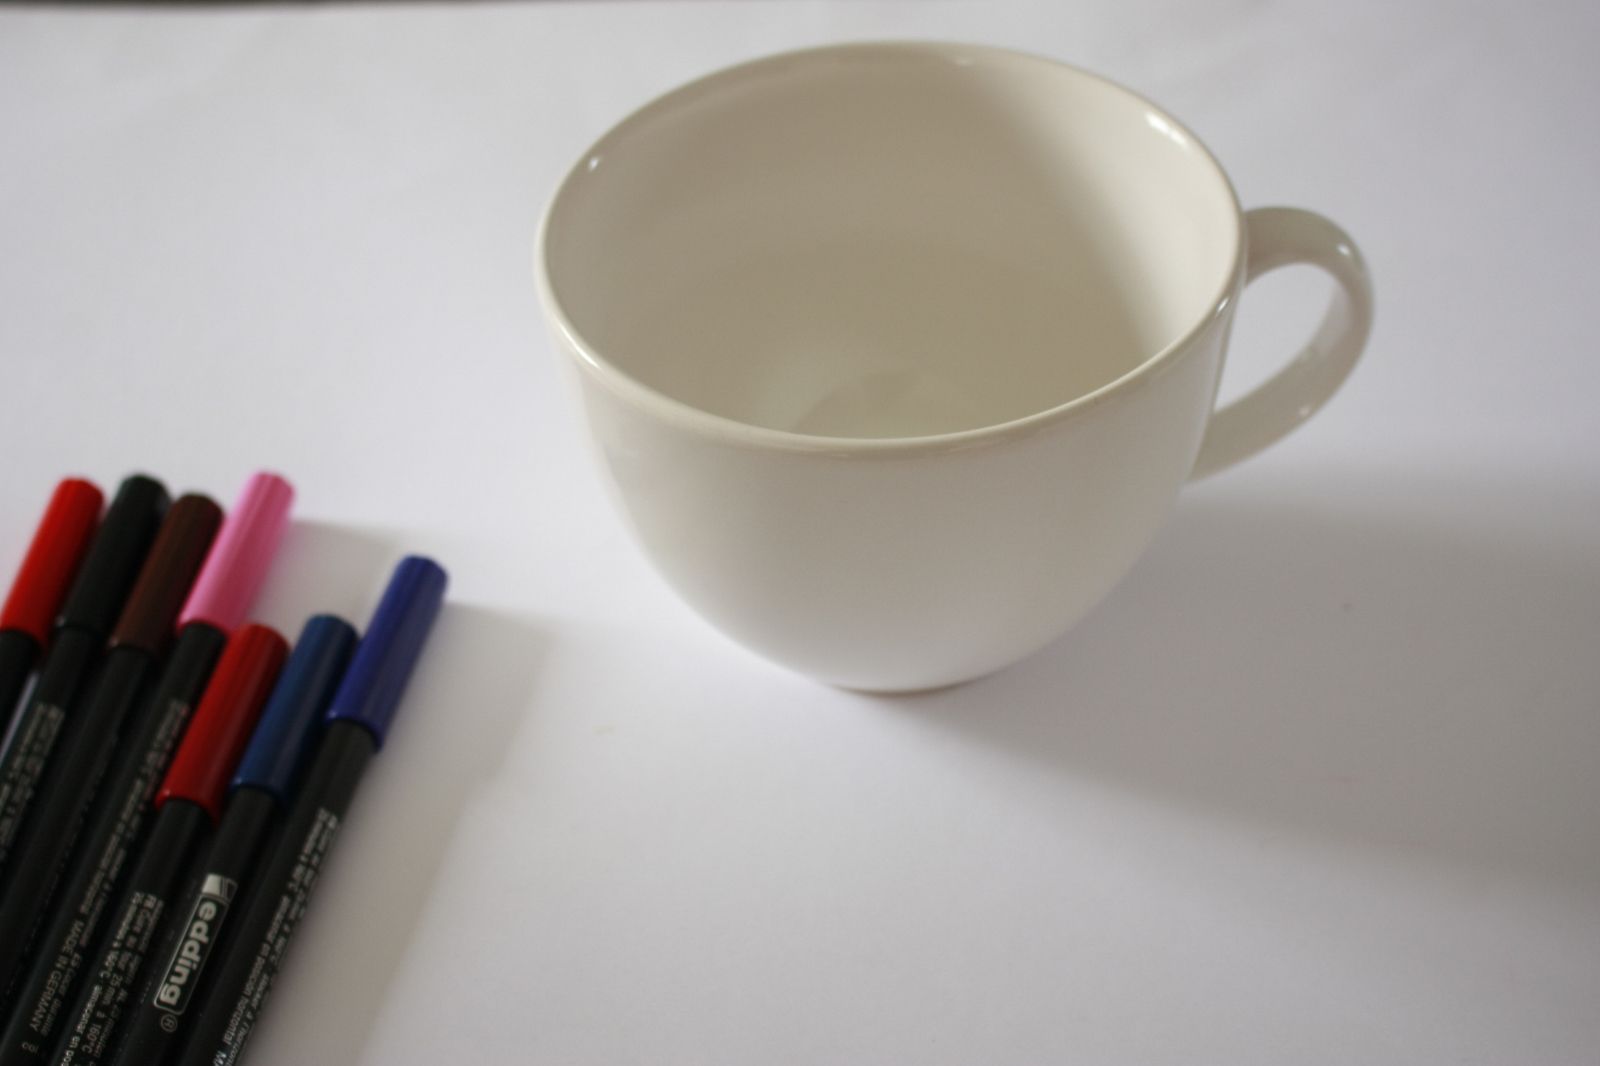 Personnaliser une tasse grâce aux feutres spéciaux porcelaine !!